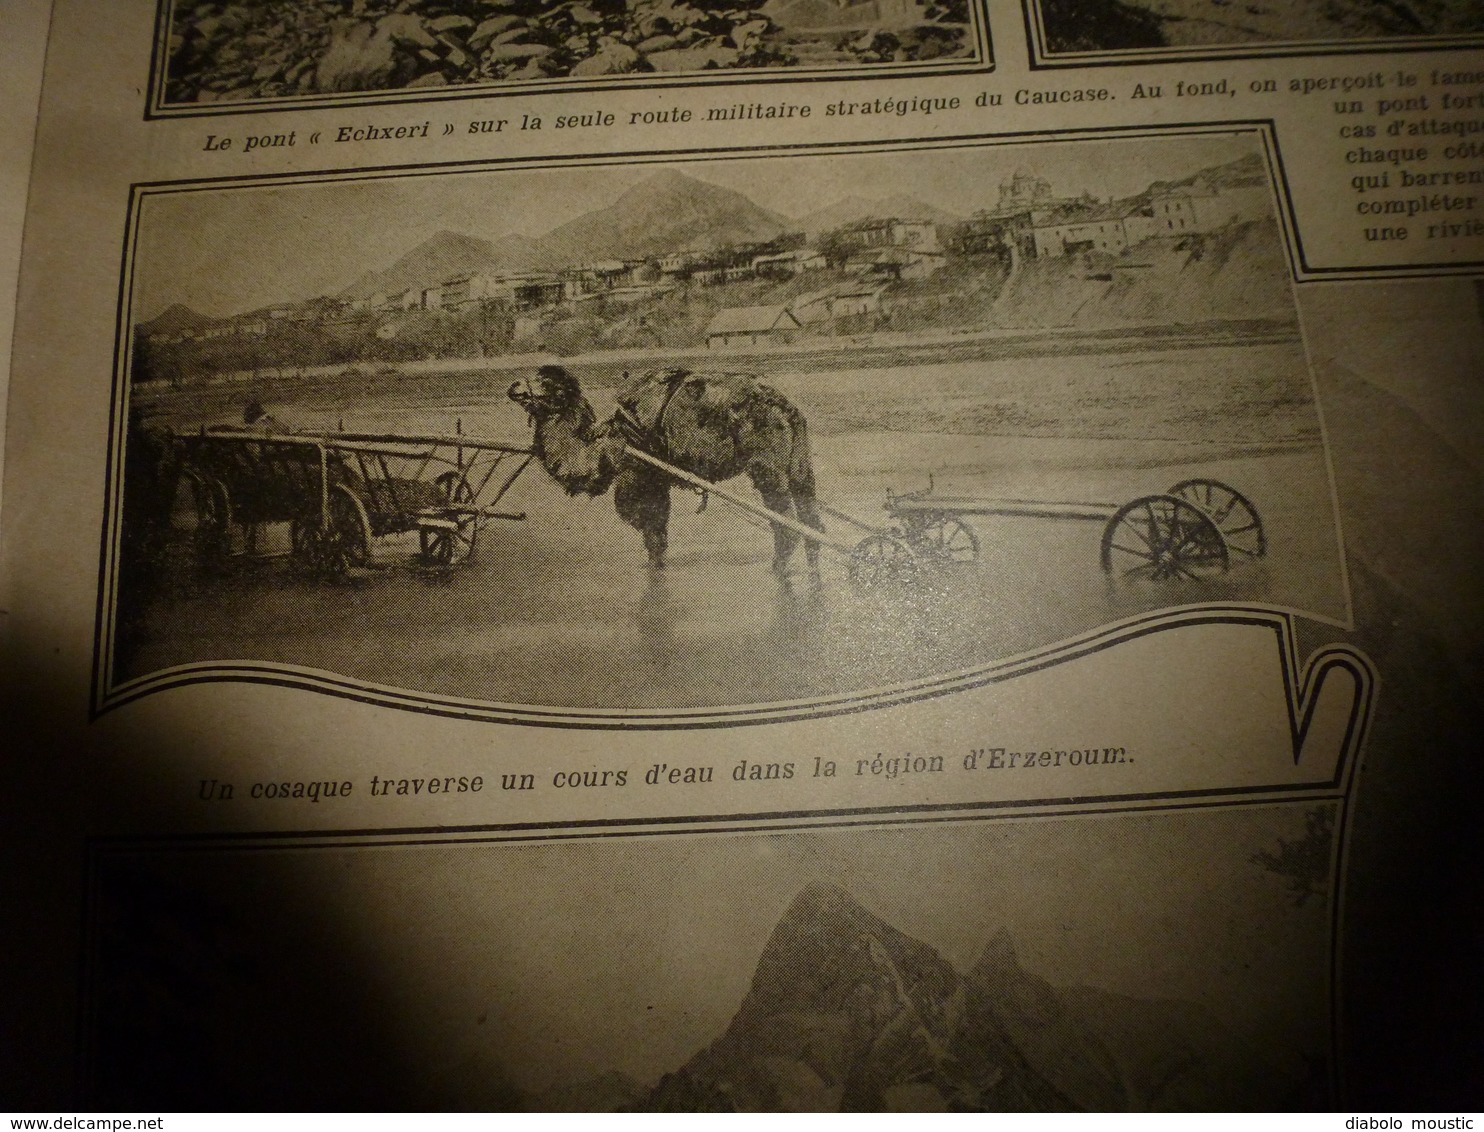 1916 LPDF:Les australiens ;L'aviateur-dessinateur Daniel de Losques est tué;Erzeroum;L'hiver dans les tranchées;etc